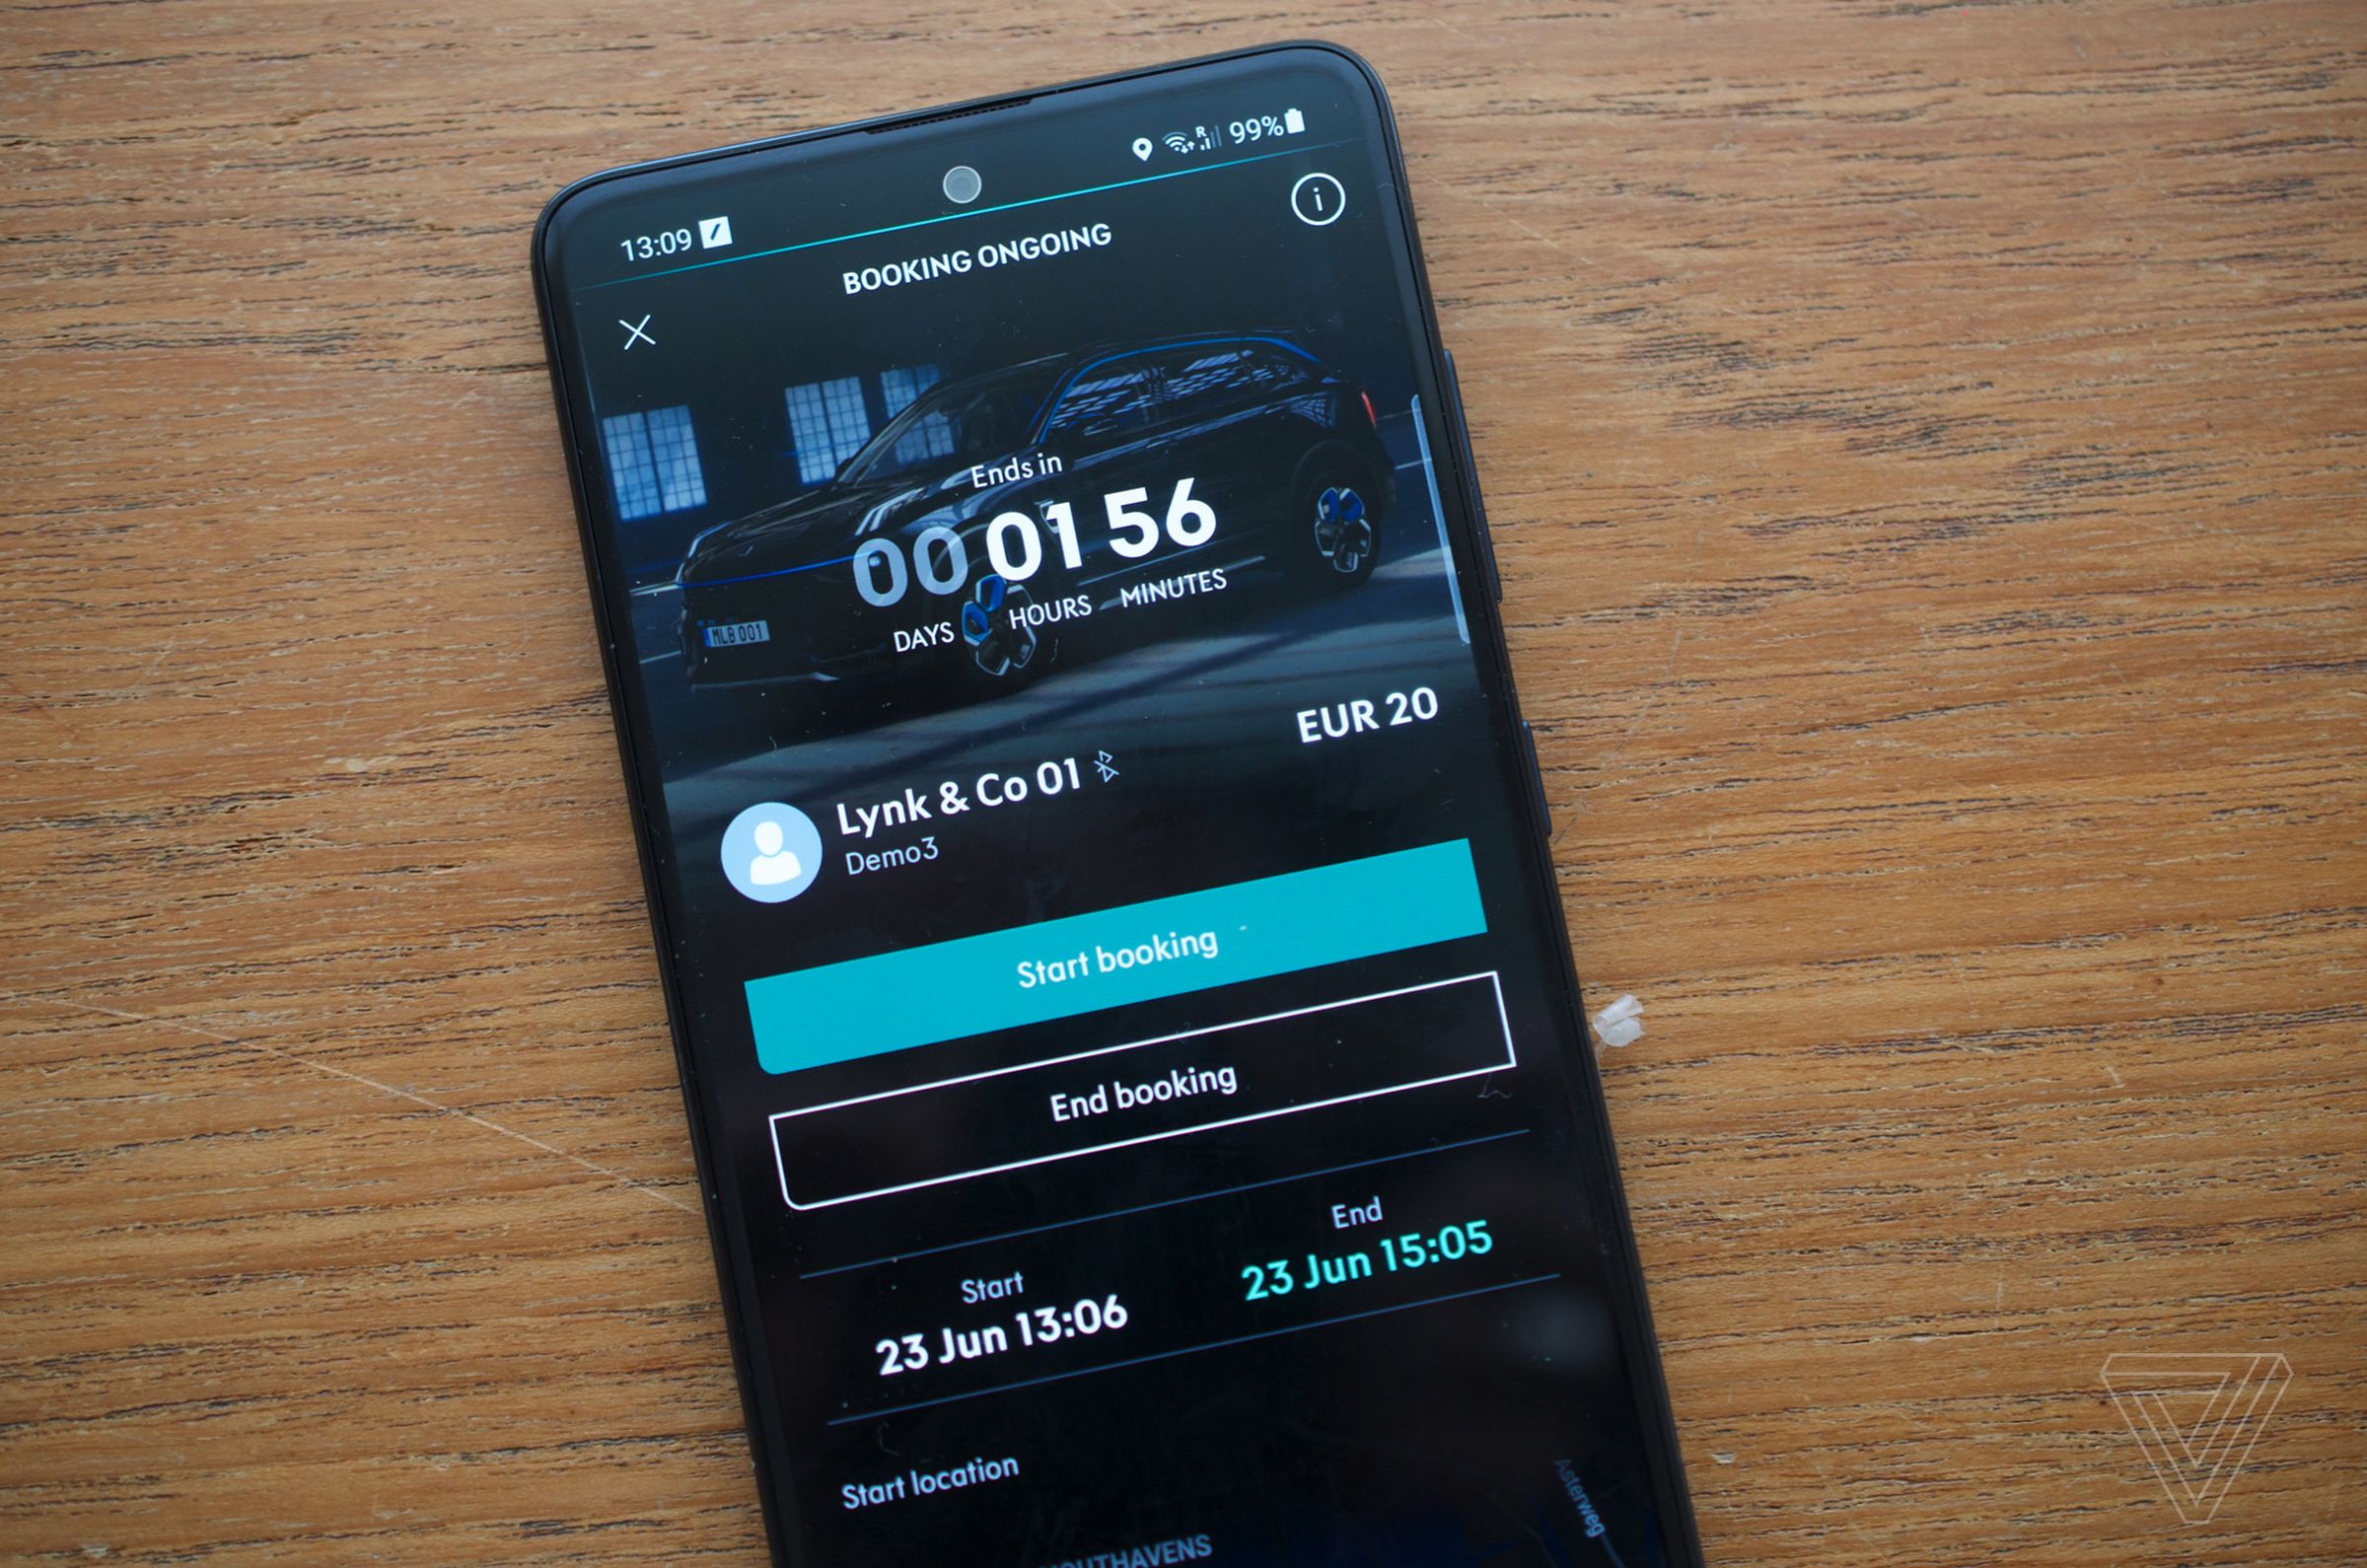 <em>Borrower: agree to pay €20 for two hours (beta app).</em>